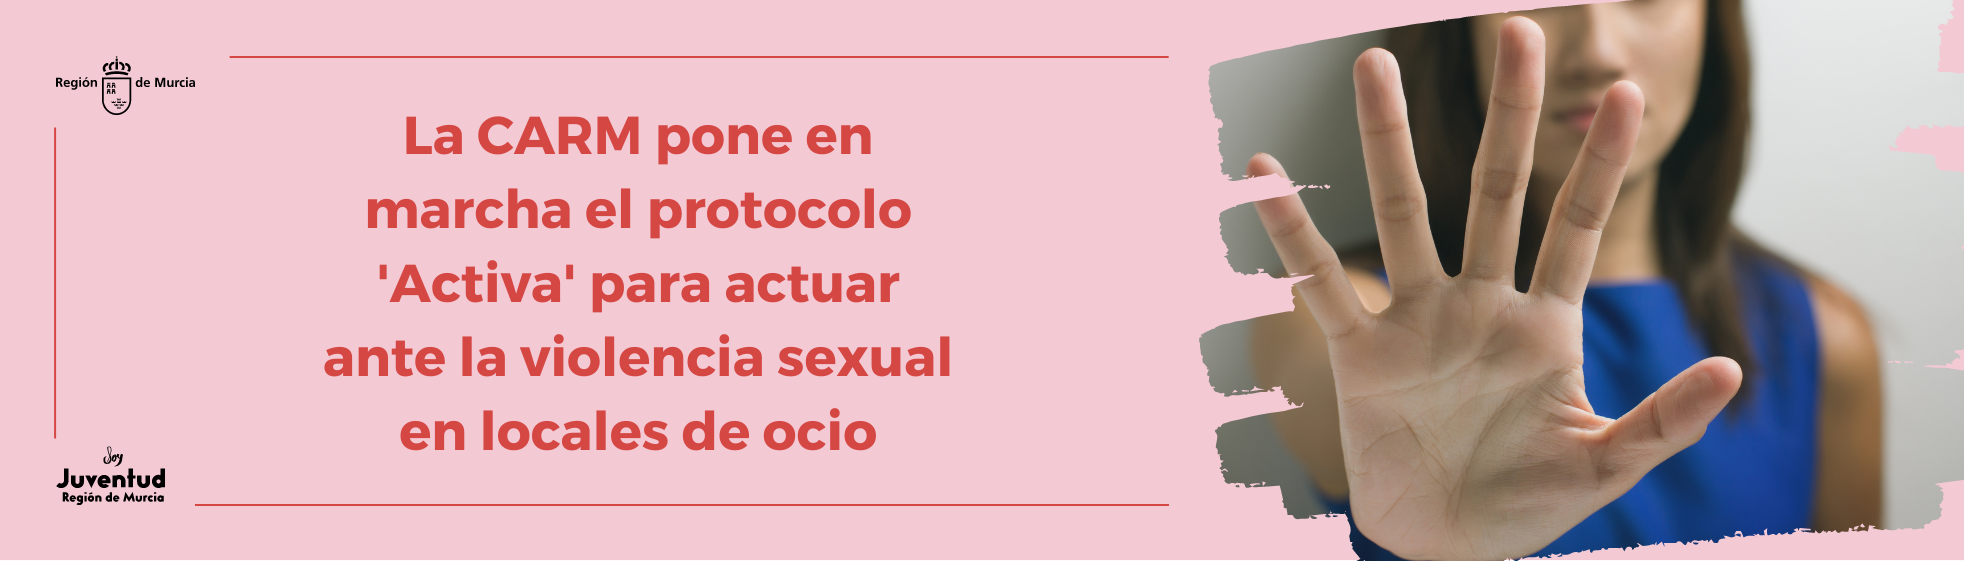 La CARM pone en marcha el protocolo 'Activa' para actuar ante la violencia sexual en locales de ocio